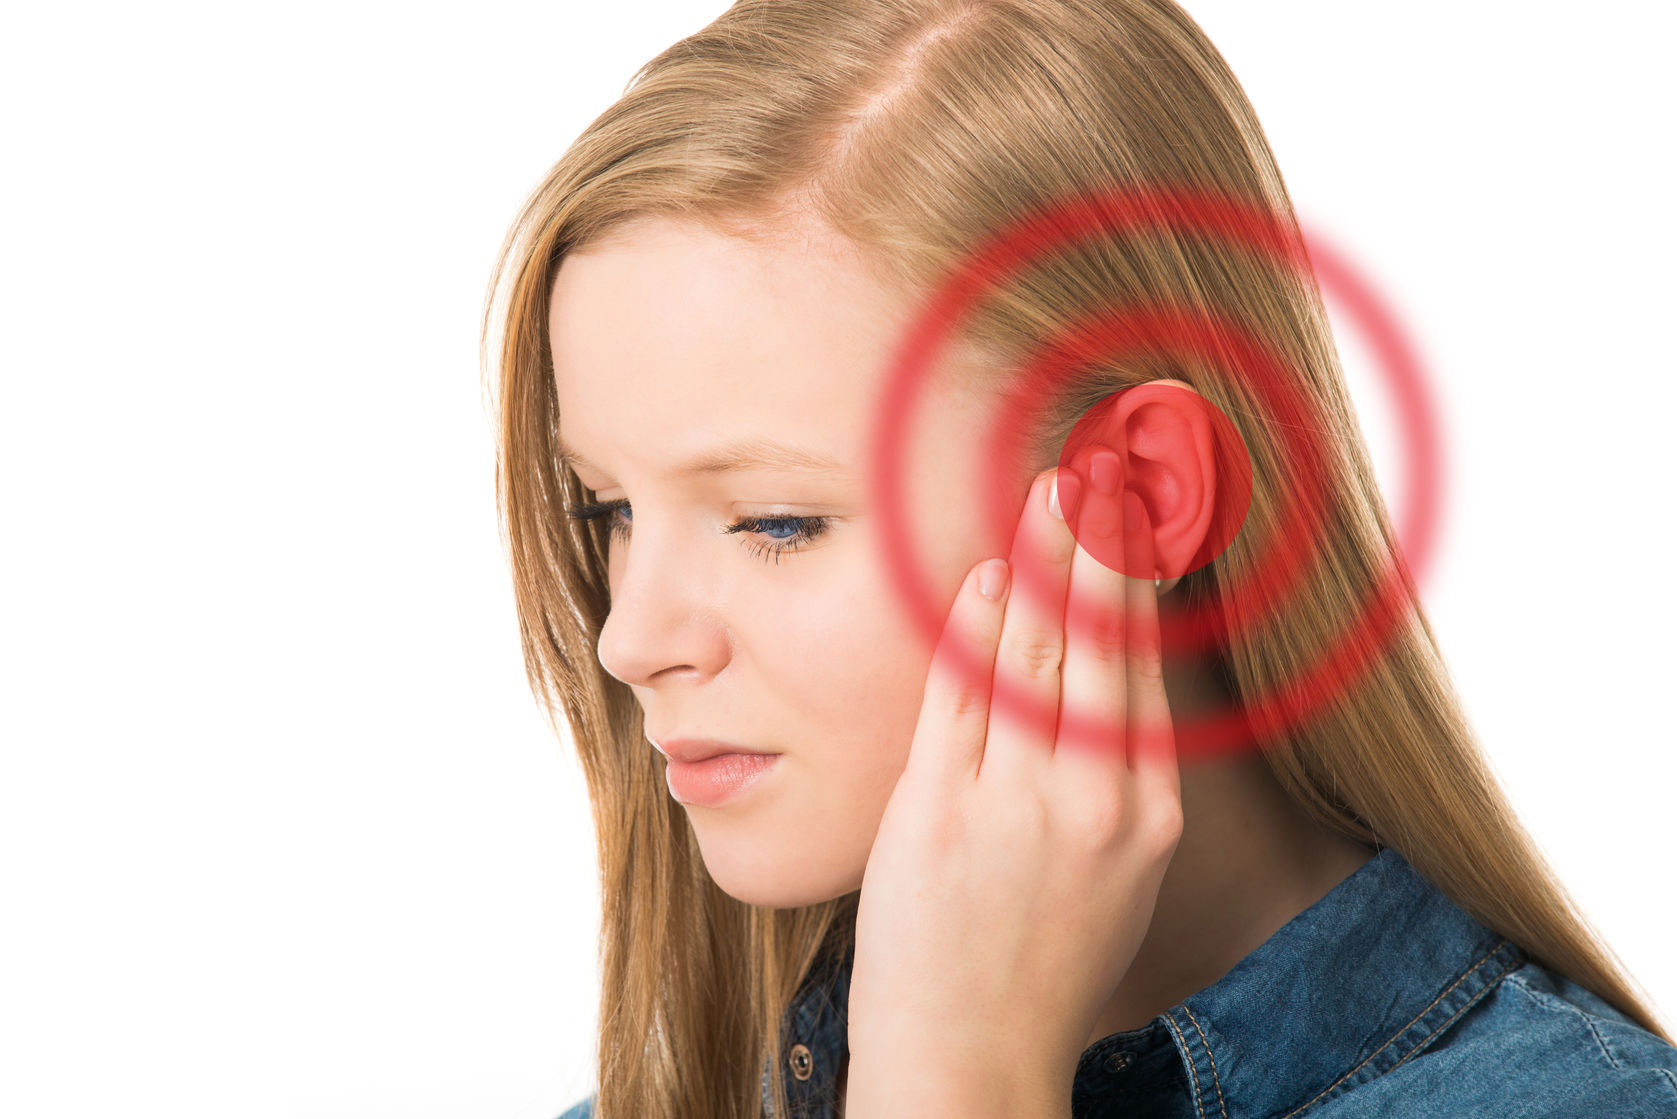 Tapones para dormir? Protege tus oídos - Modavision